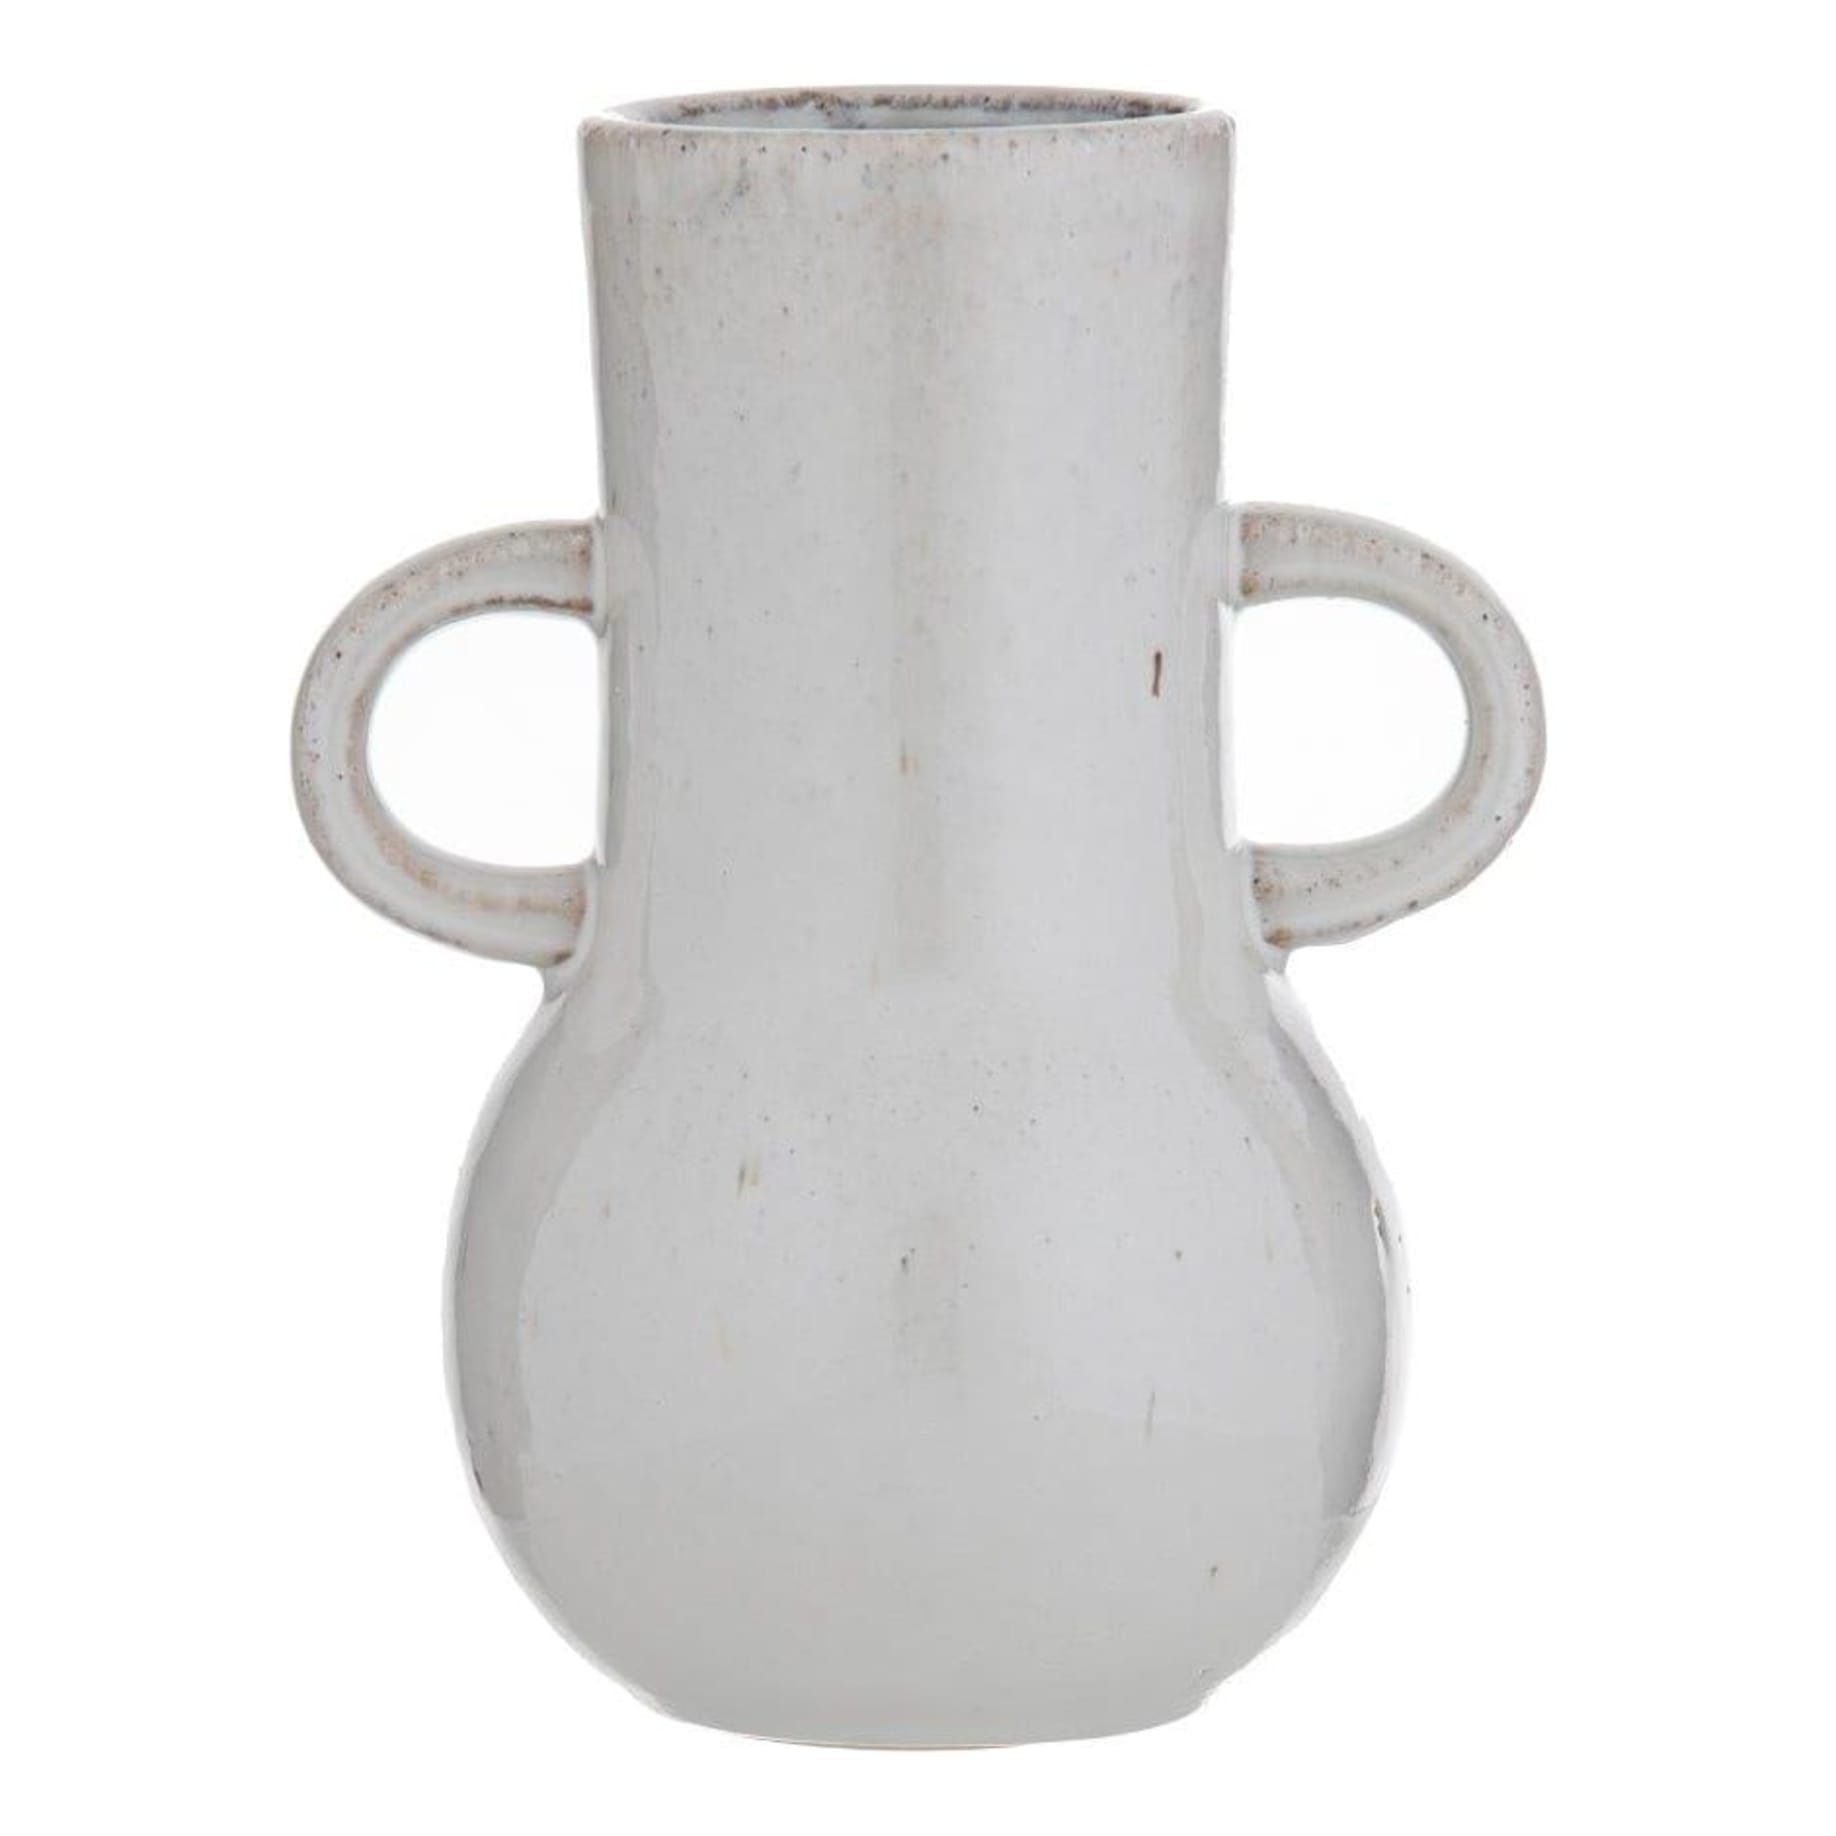 Tilda Vessel 15x20cm in Ceramic Vintage White